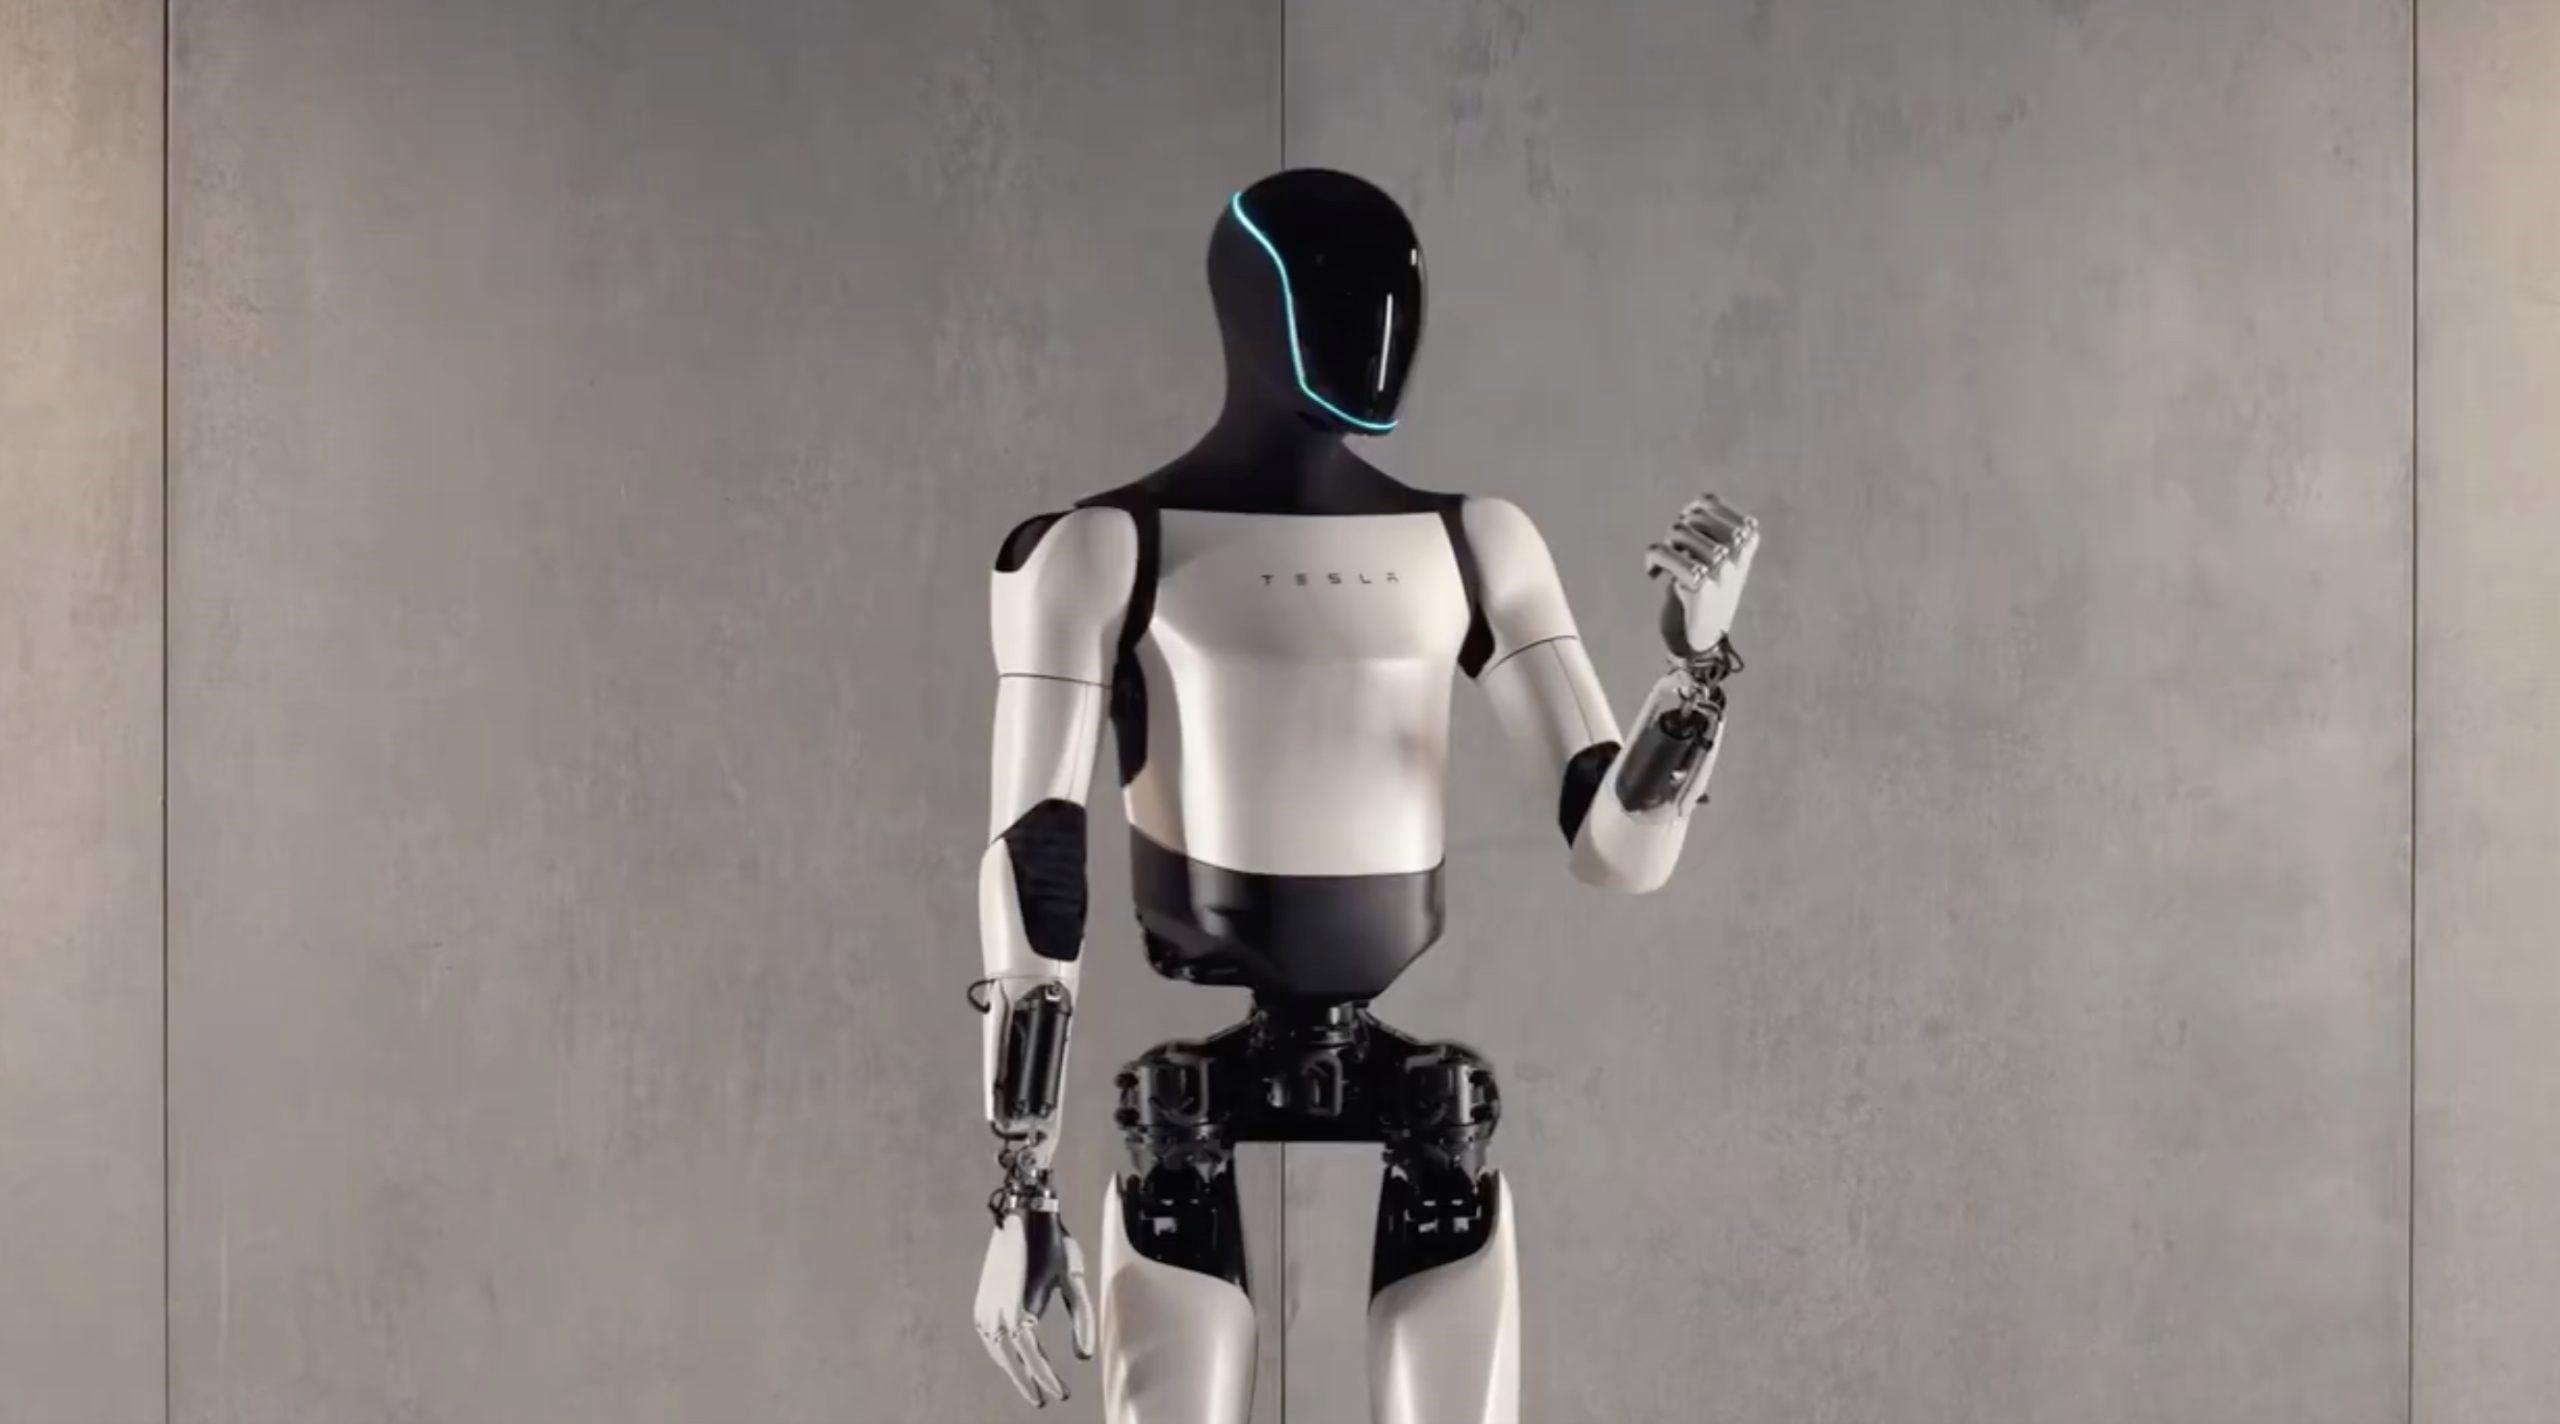 Tesla’nın insansı robotu Optimus, otonom olarak fabrikada çalışmaya başladı